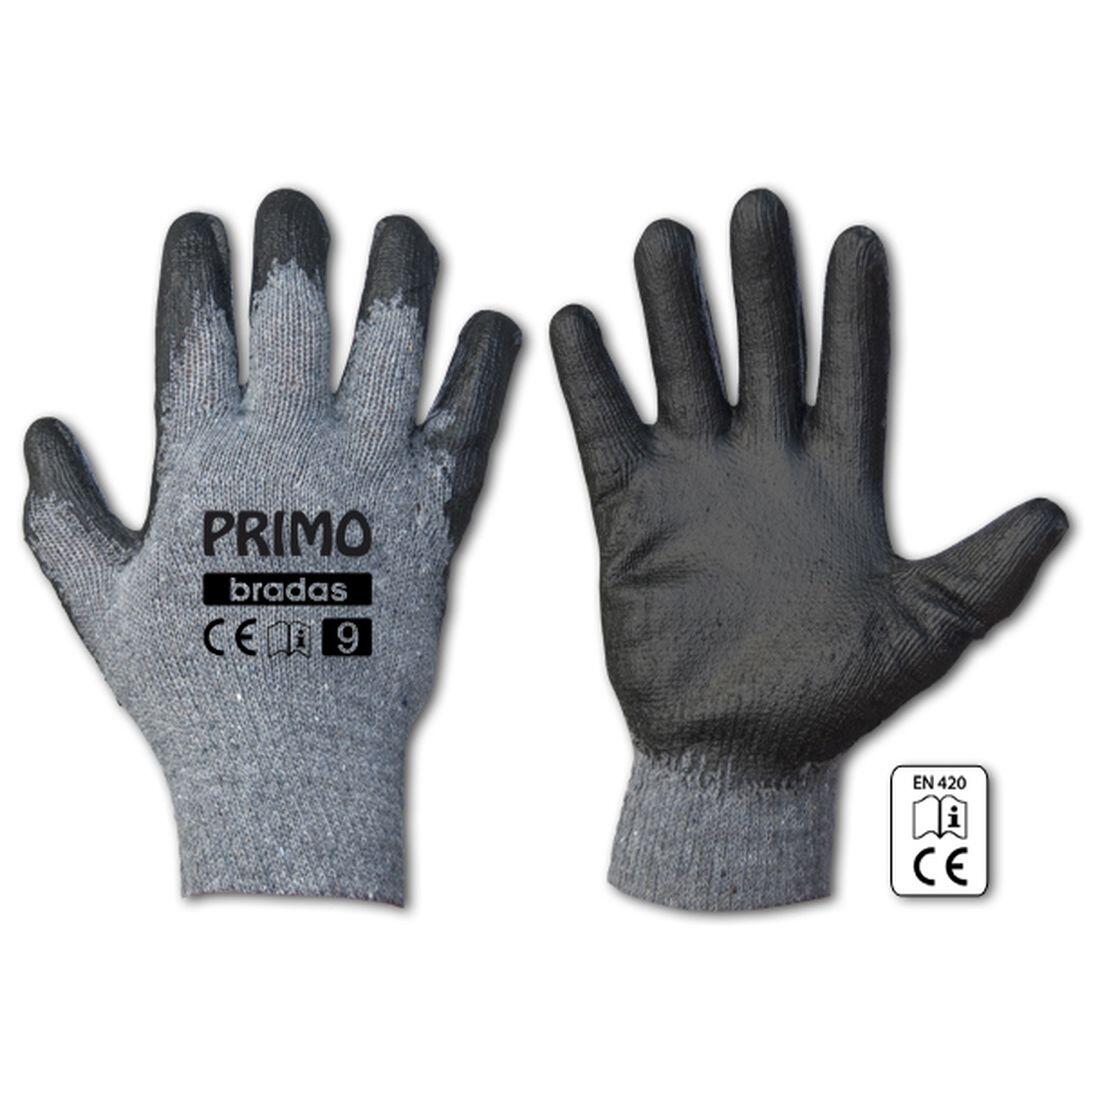 rukavice PRIMO latex 11 0.07 Kg MAXMIX Sklad14 715685 357